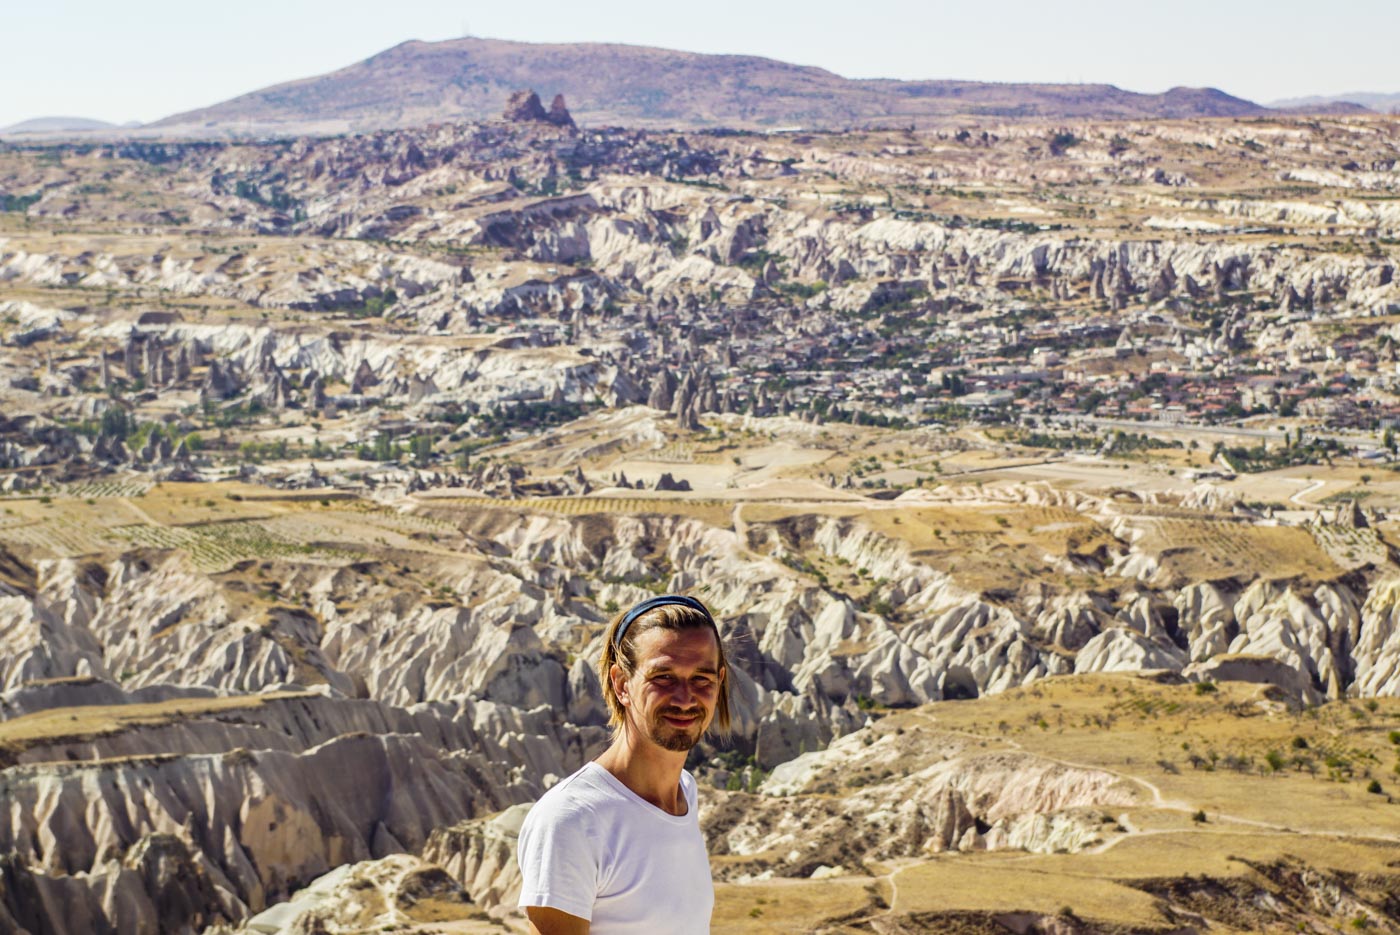 Paul steht auf einem Berg und blickt in die Kamera im Hintergrund ist die wunderschöne zerfurchte kappadokische Landschaft mit ihren Zuckerhüten und Tälern zu erblicken.